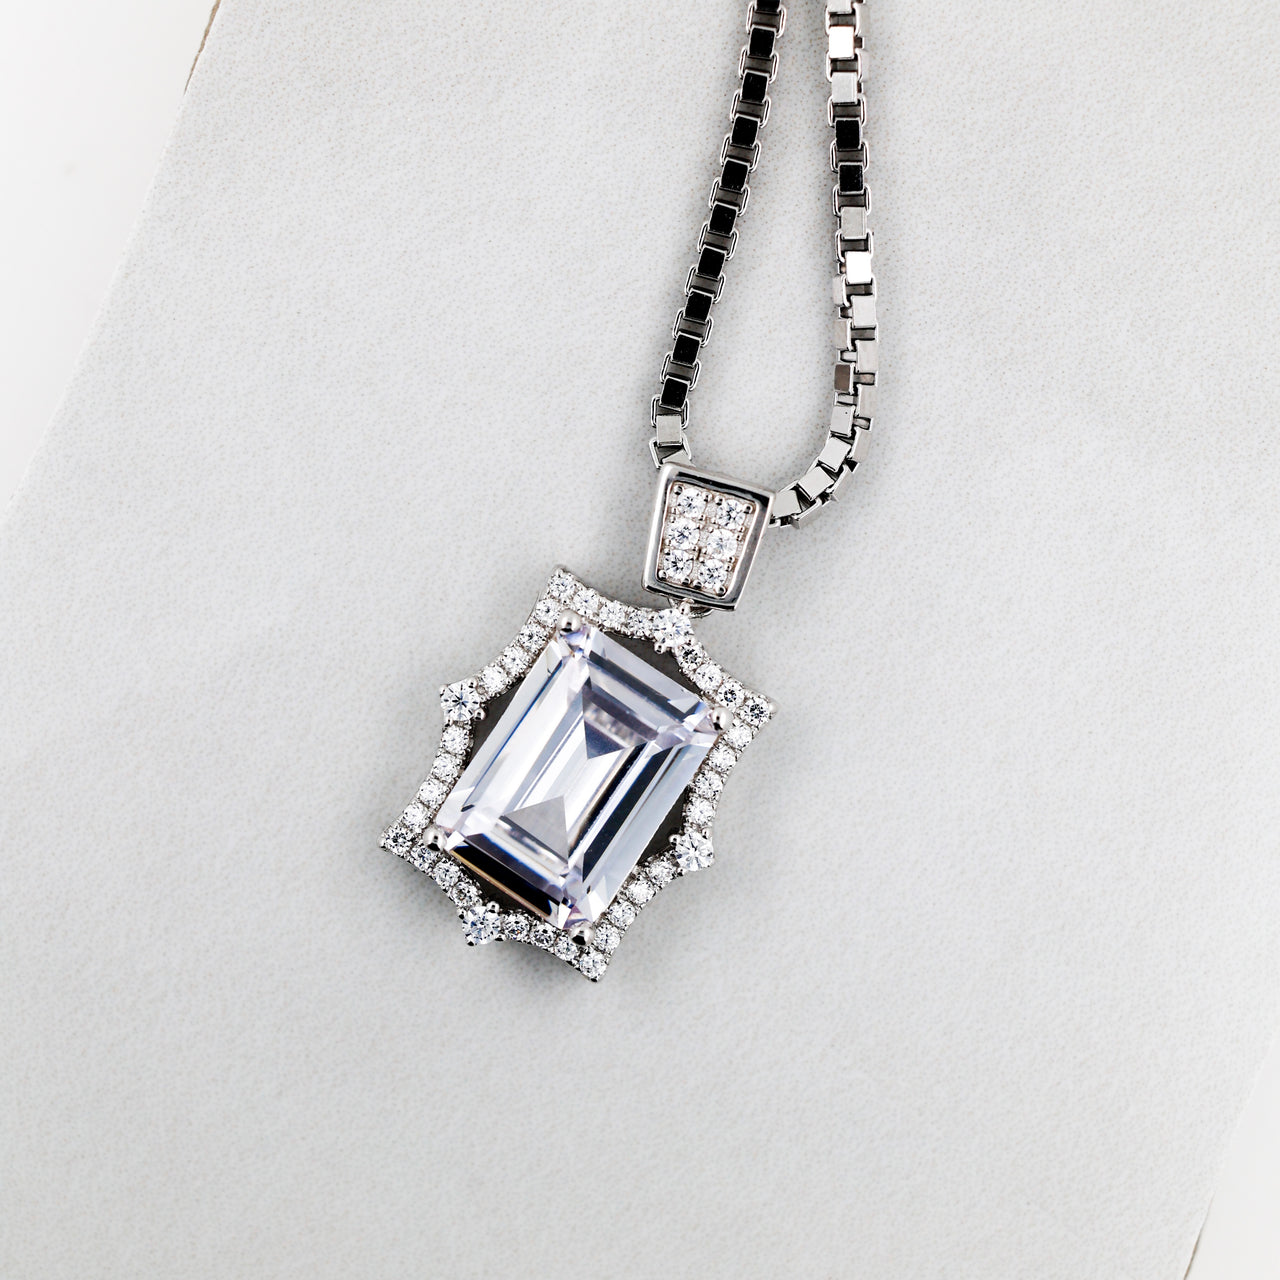 .925 fairstone pendant & necklace